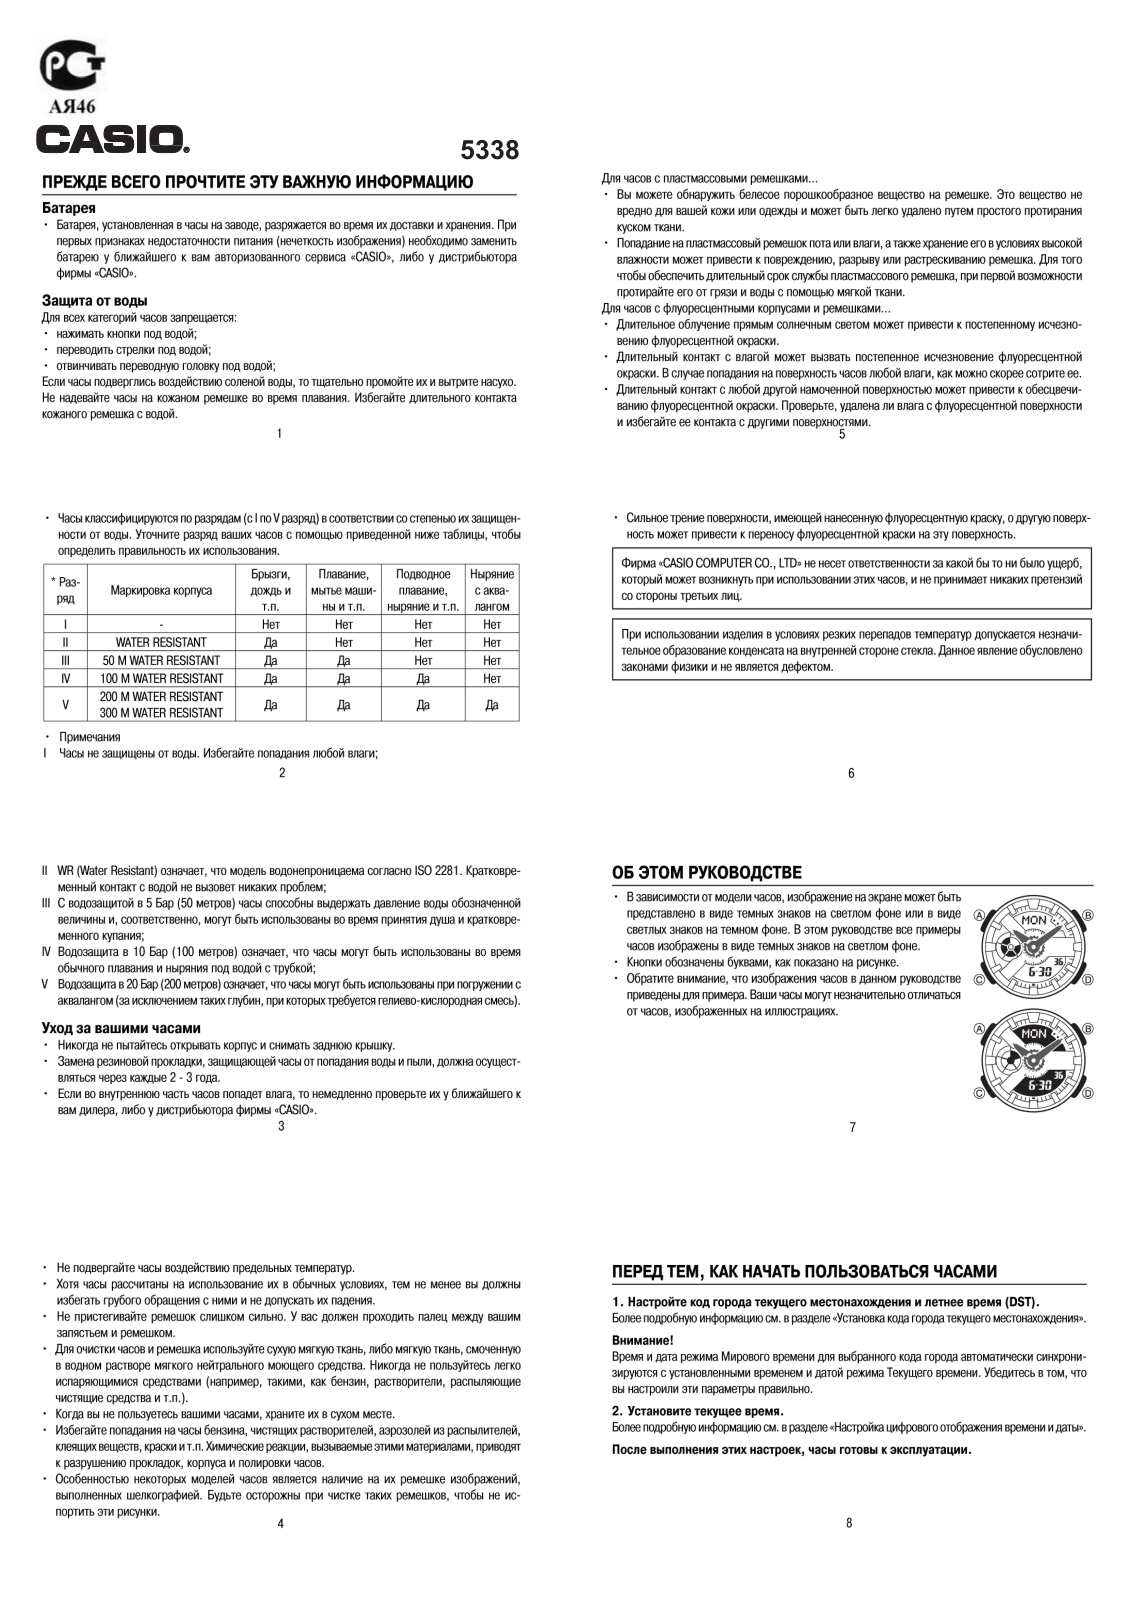 Casio BA-110NC-6A User Manual